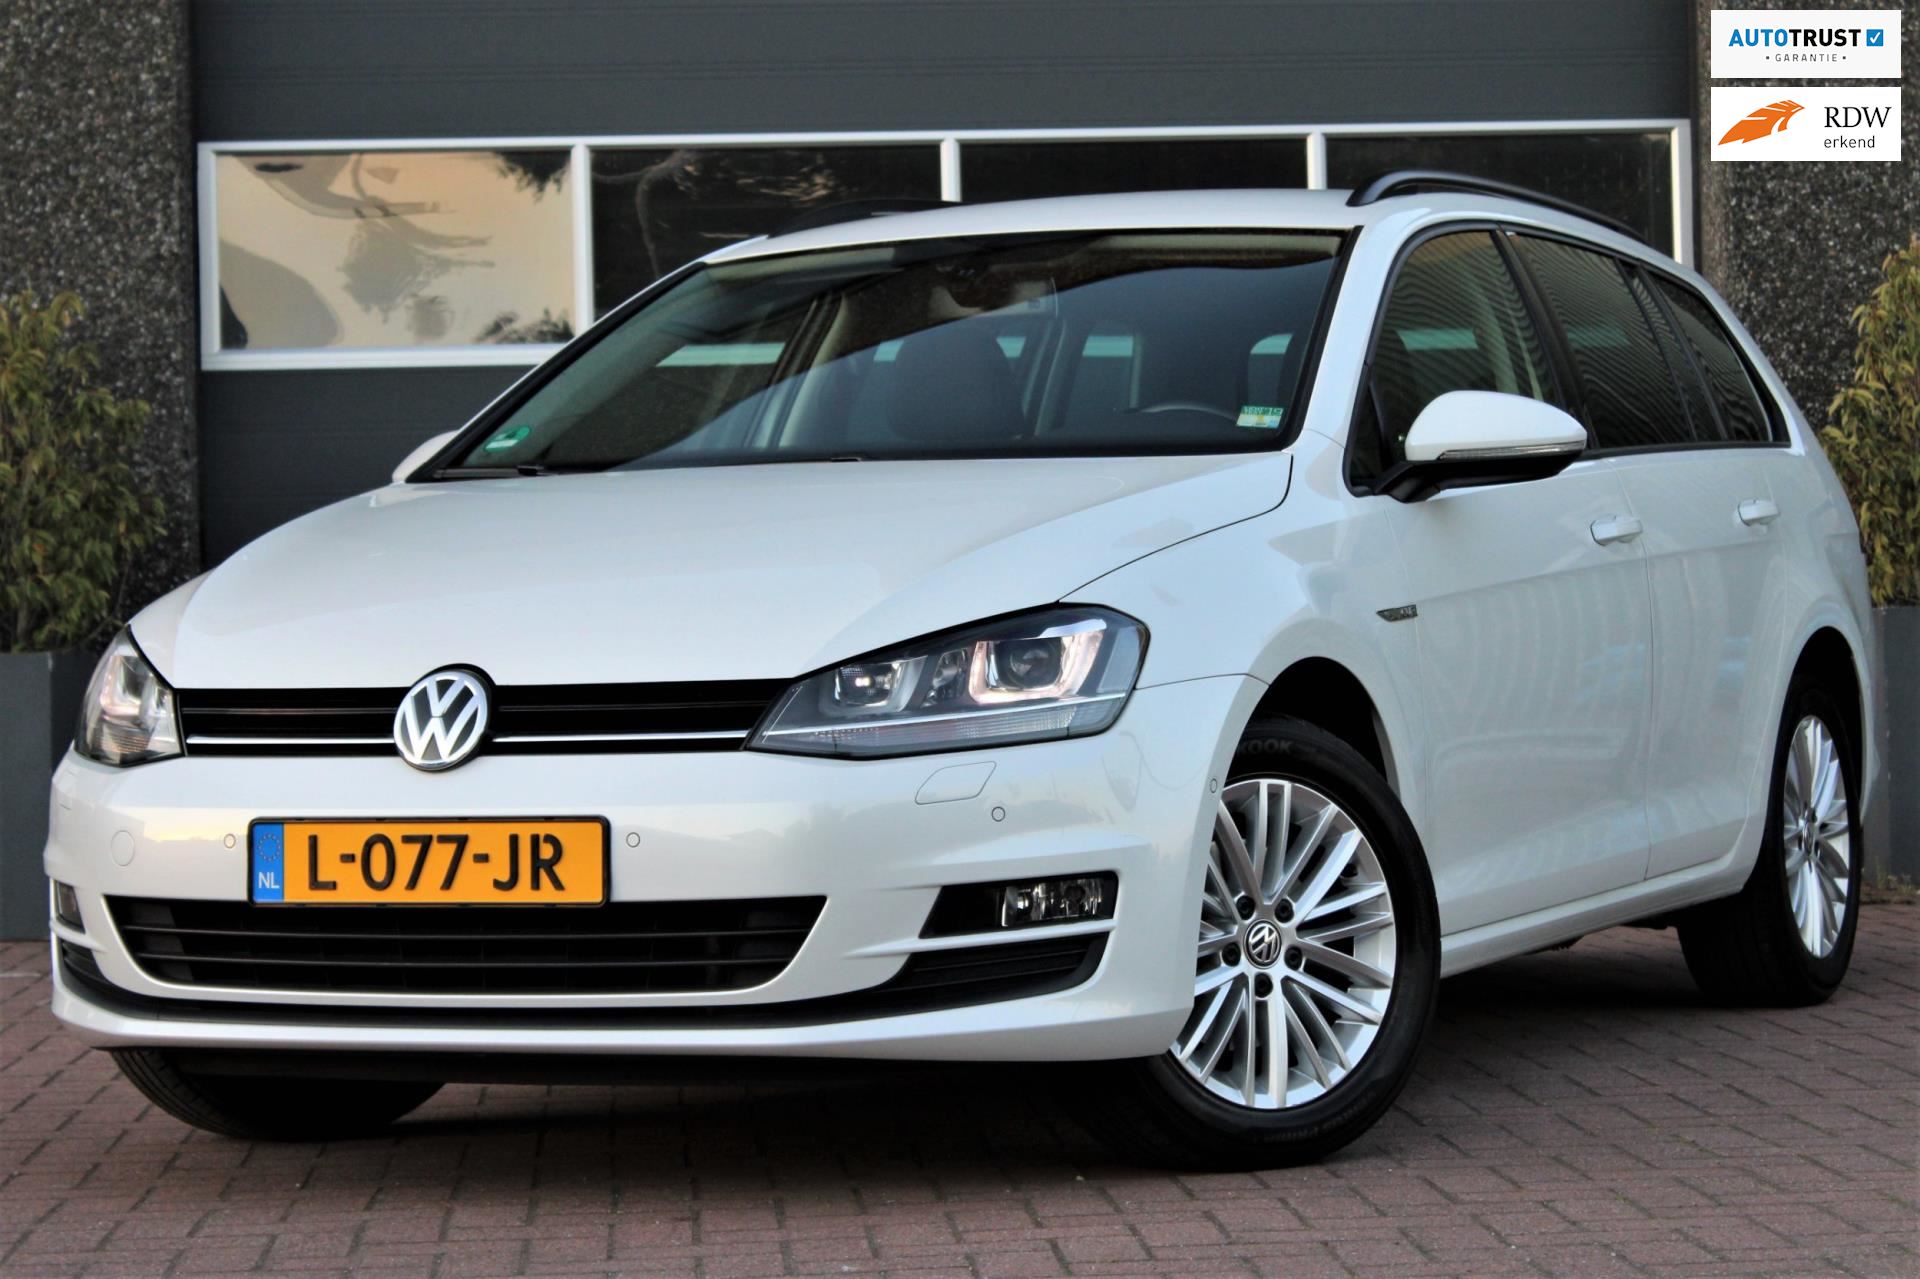 Opiaat Afwijken Omhoog gaan Volkswagen Golf Variant - 1.4 TSI Highline cup DSG AUTOMAAT / NAVI /  PARKEERHULP / Benzine uit 2014 - www.delabieautos.nl